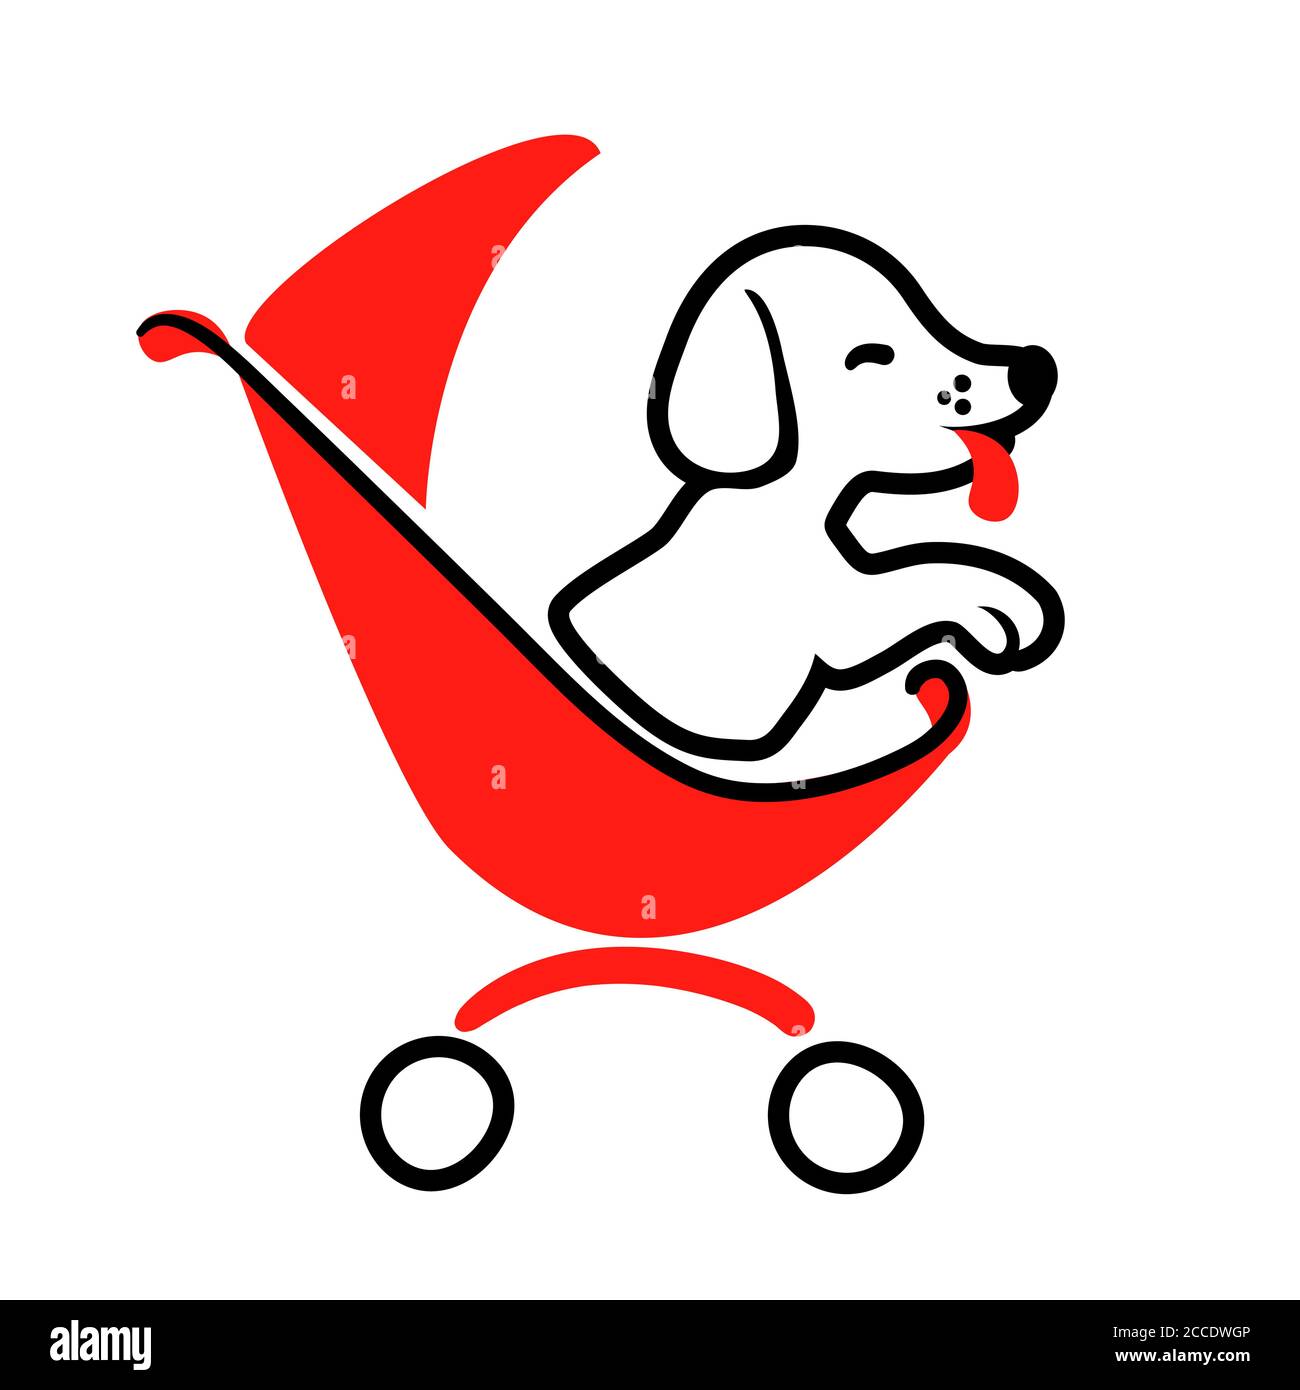 Logo Dog sitter in stile disegno su sfondo bianco per l'evidenziazione. Elemento isolato vettore icona animale da passeggio nel carrello. Illustrazione piatta del trasporto allo zoo. Divertente business cura degli animali concetto art. Illustrazione Vettoriale